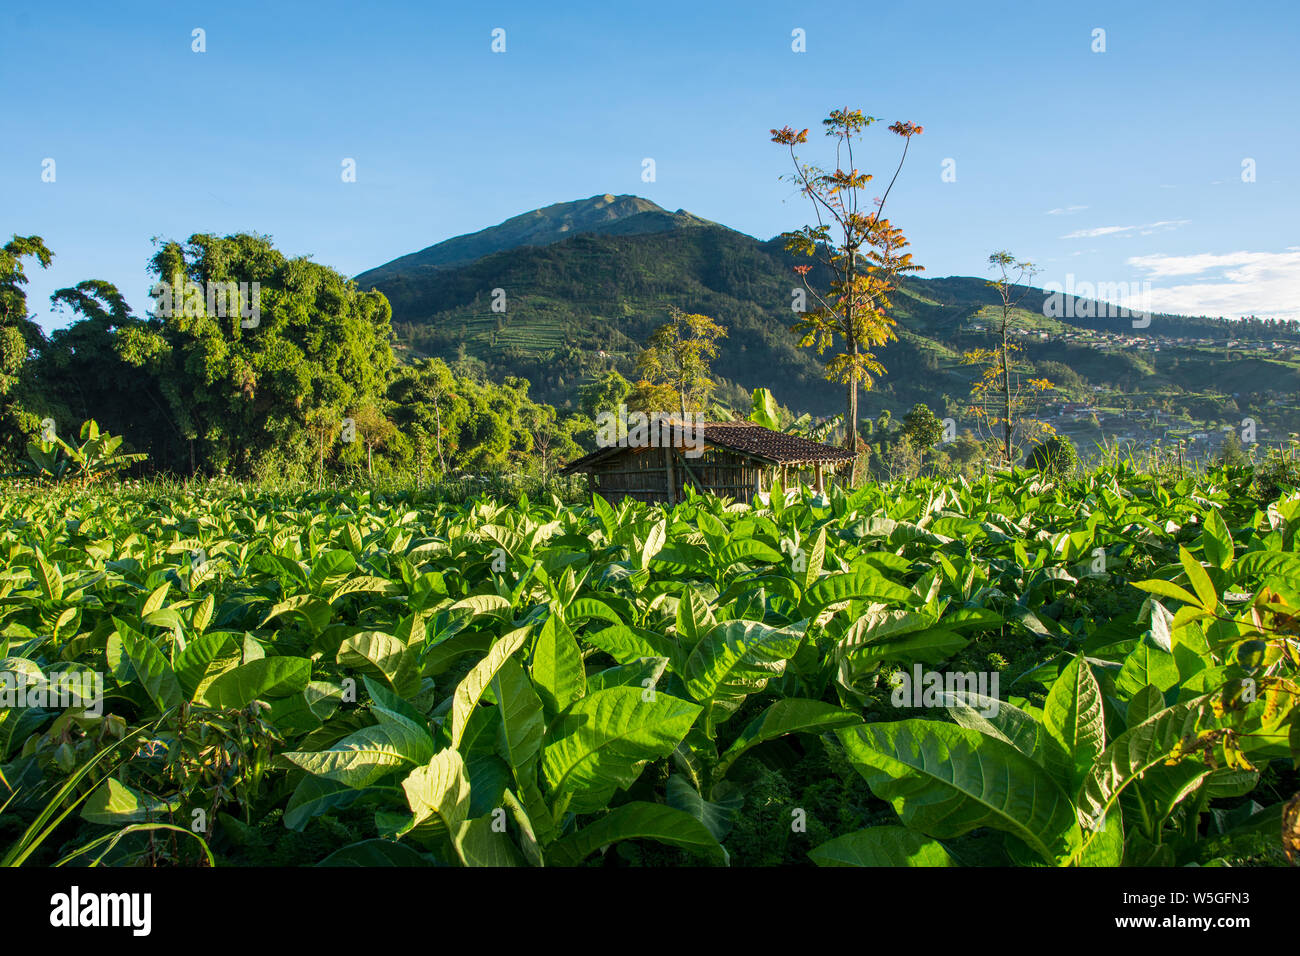 Paysage panoramique vue sur la culture du tabac en Indonésie et la montagne en arrière-plan. Banque D'Images